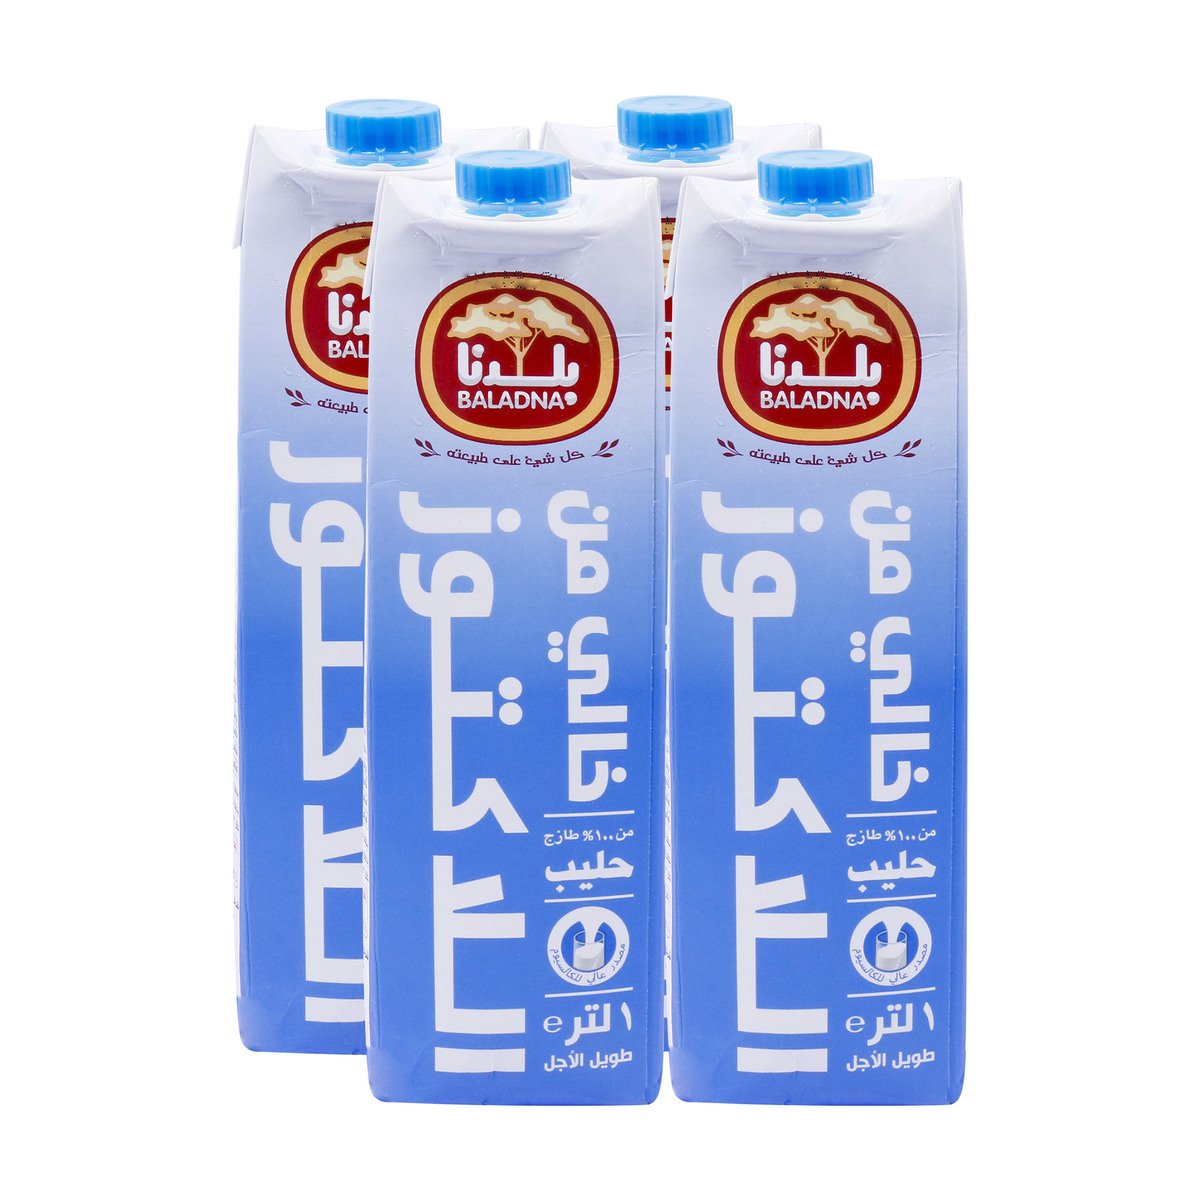 Baladna Long Life Full Fat Milk Lactose Free 4 x 1Litre